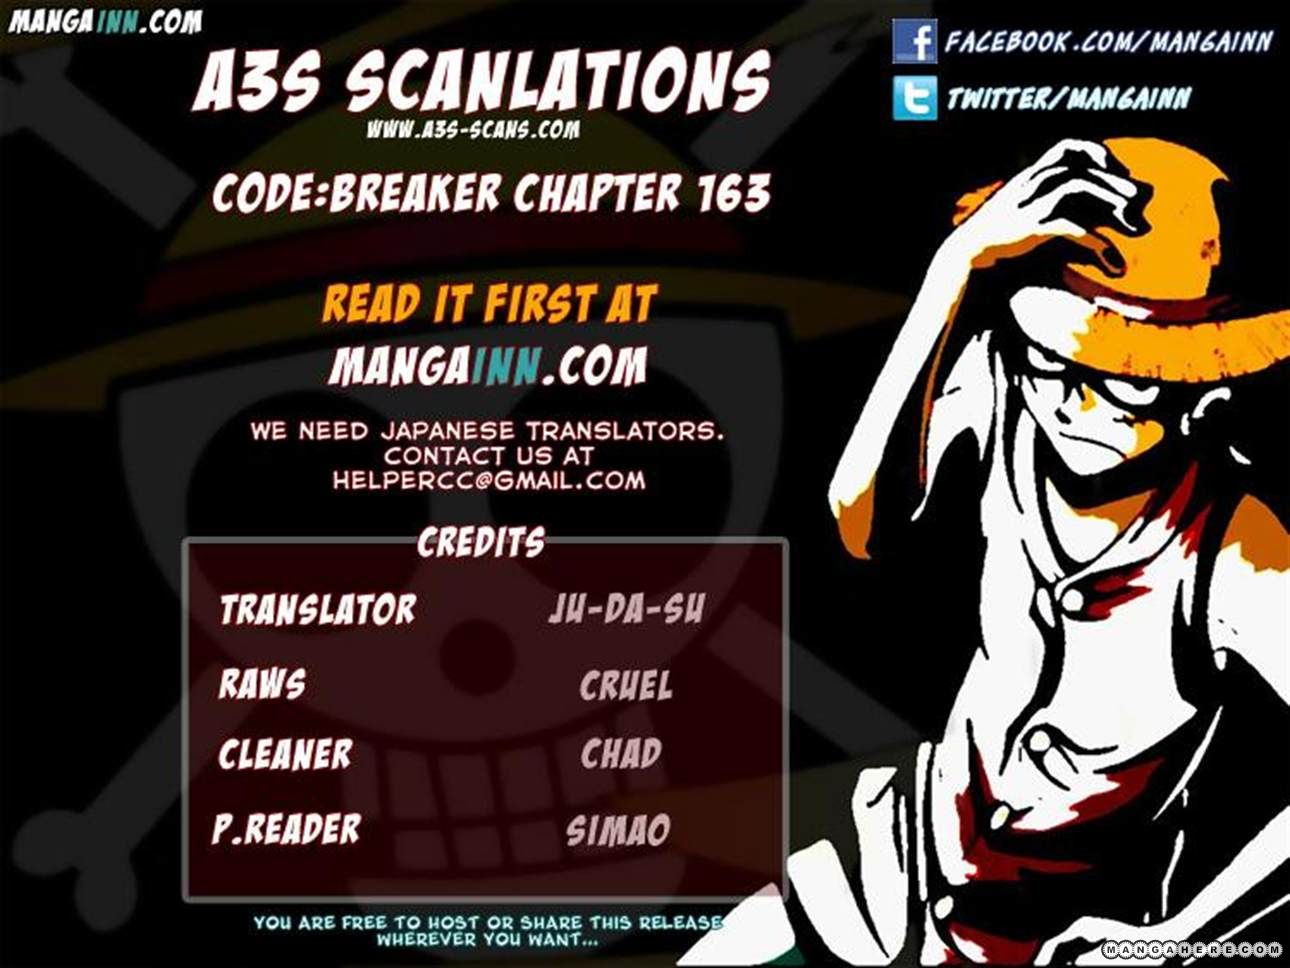 Code:Breaker 163